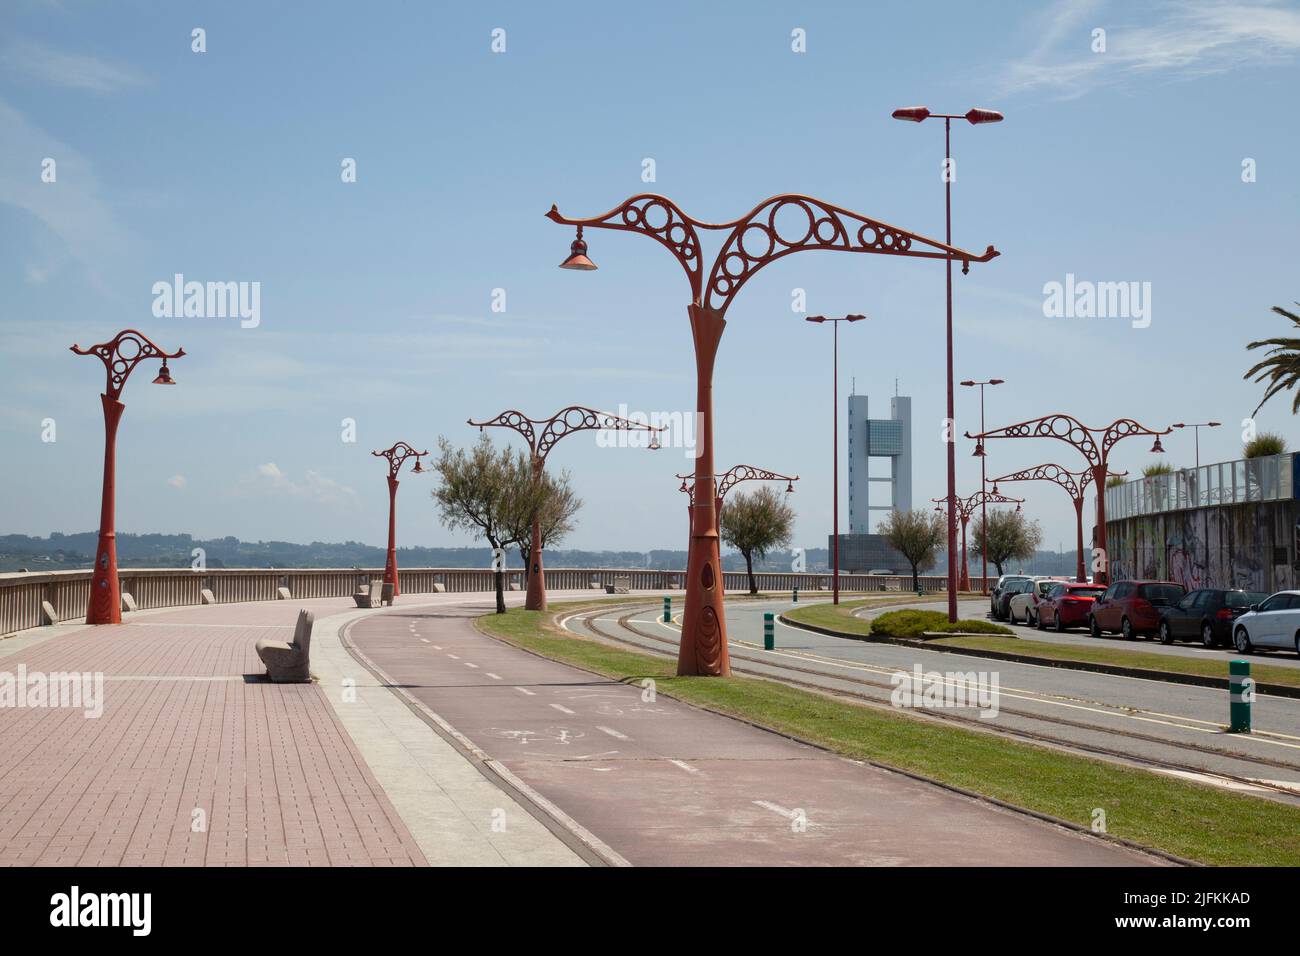 Paseo marítimo, carril bici y carretera de coches en la ciudad de La Coruña, Galicia, España Foto de stock